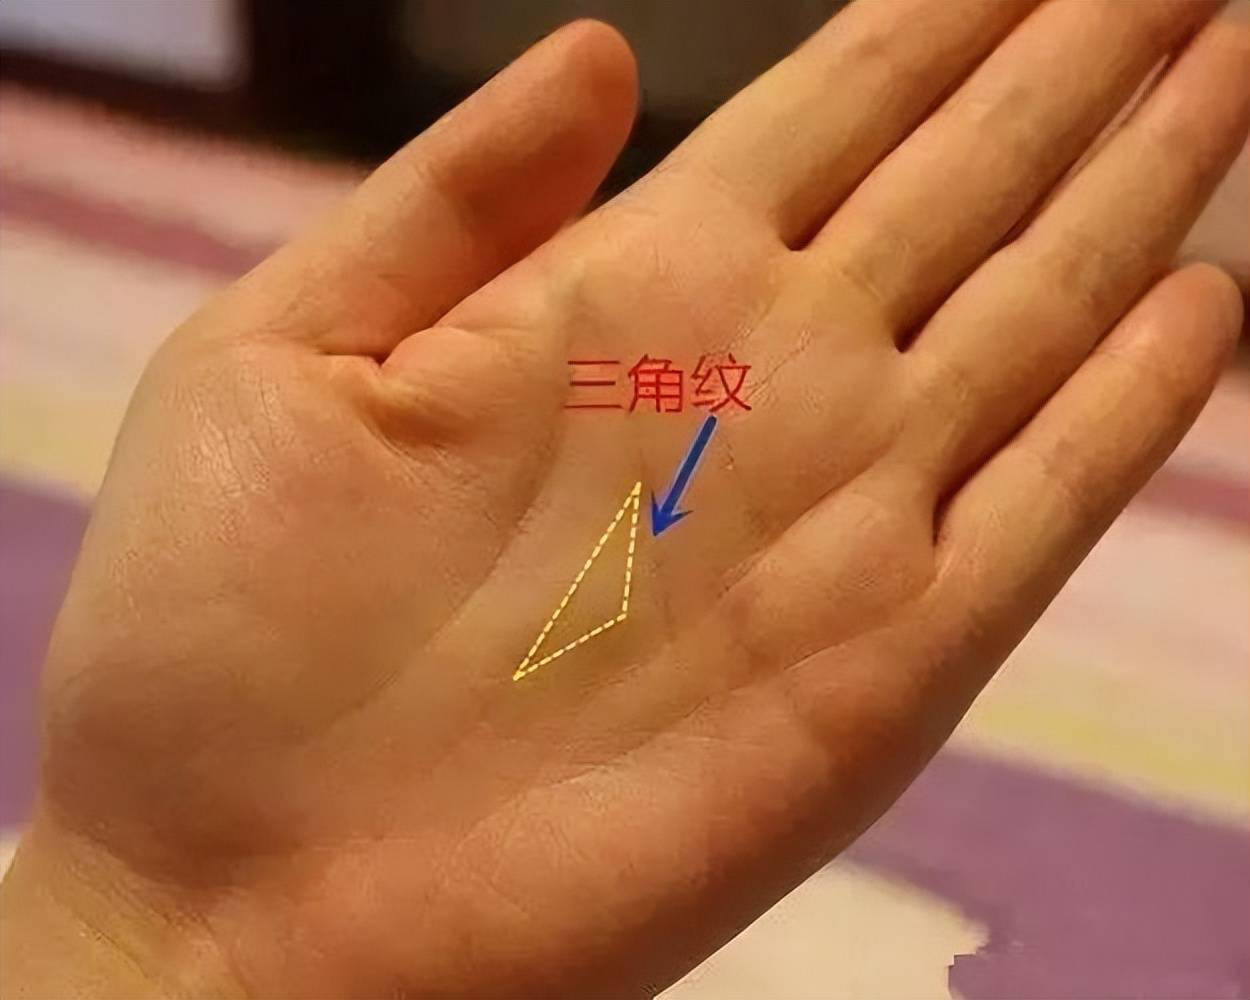 手掌图占卜你的手掌纹路是什么意思?你知道吗